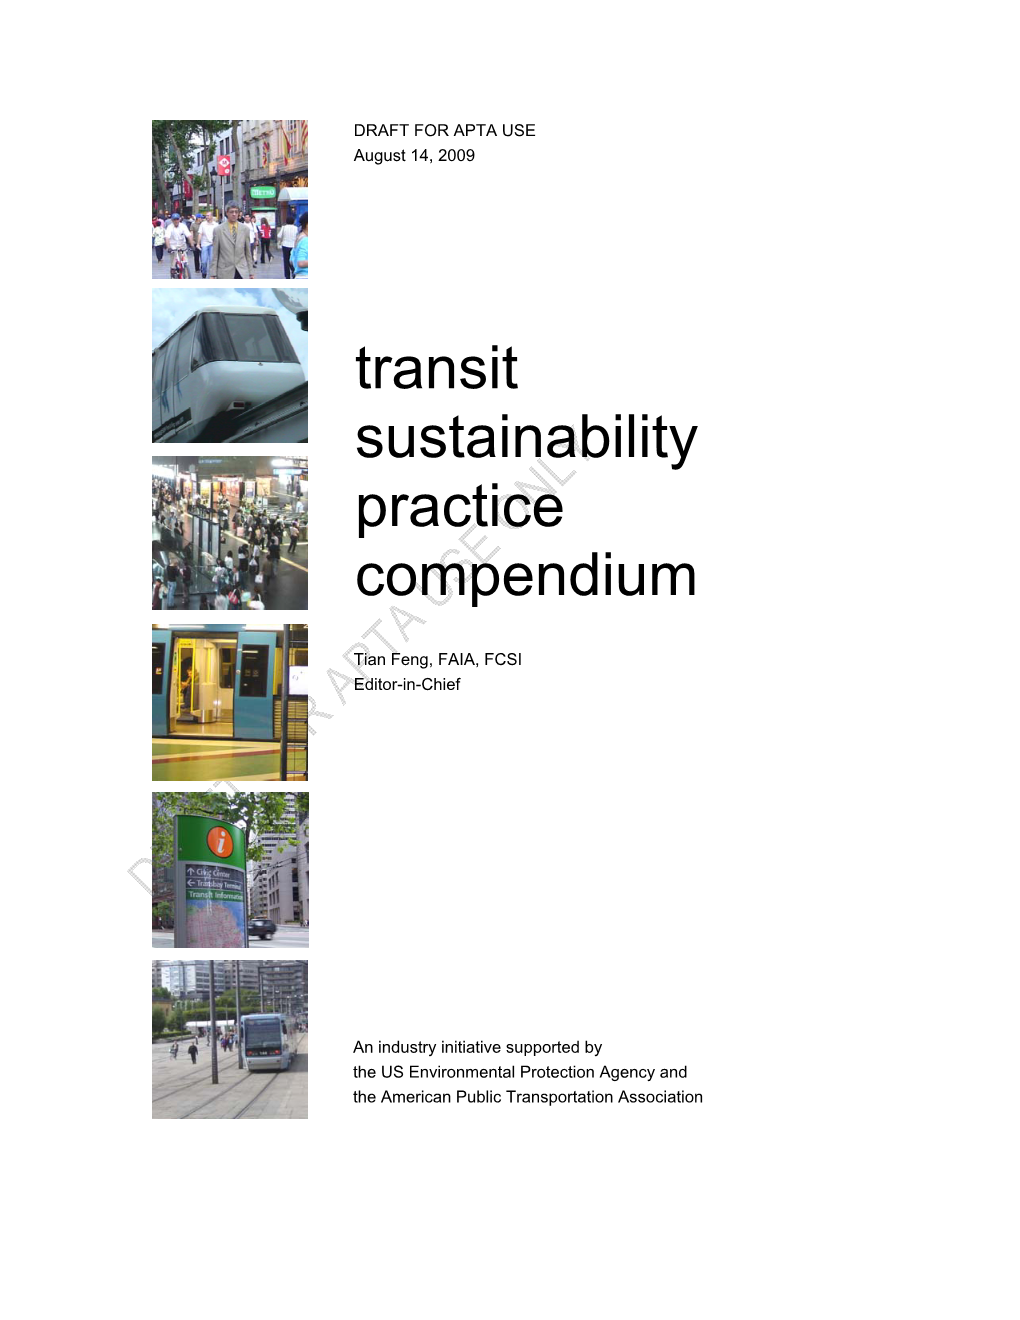 Transit Sustainability Practice Compendium